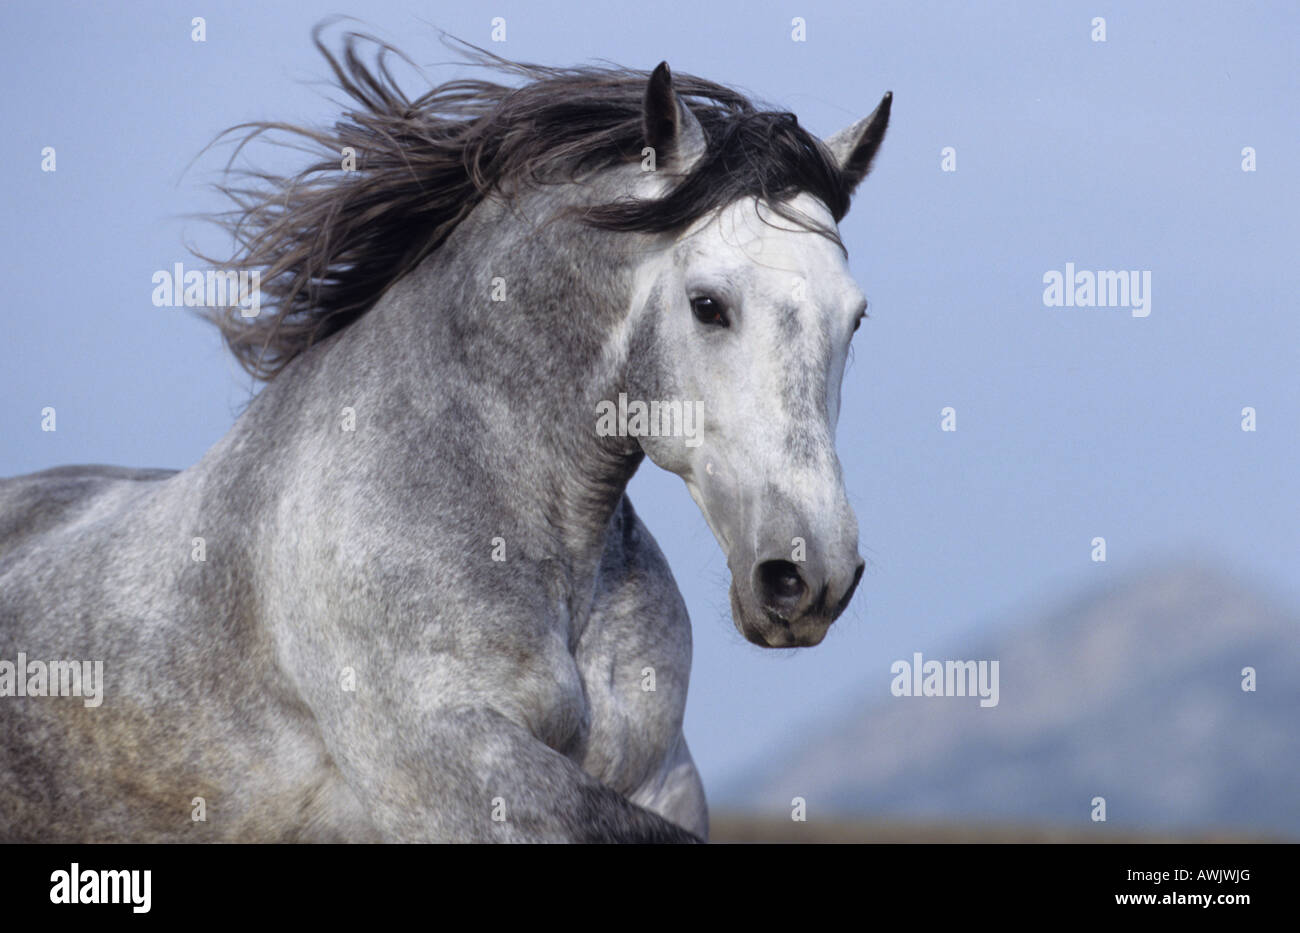 Cavallo andaluso (Equus caballus), ritratto di stallone con la criniera fluente Foto Stock